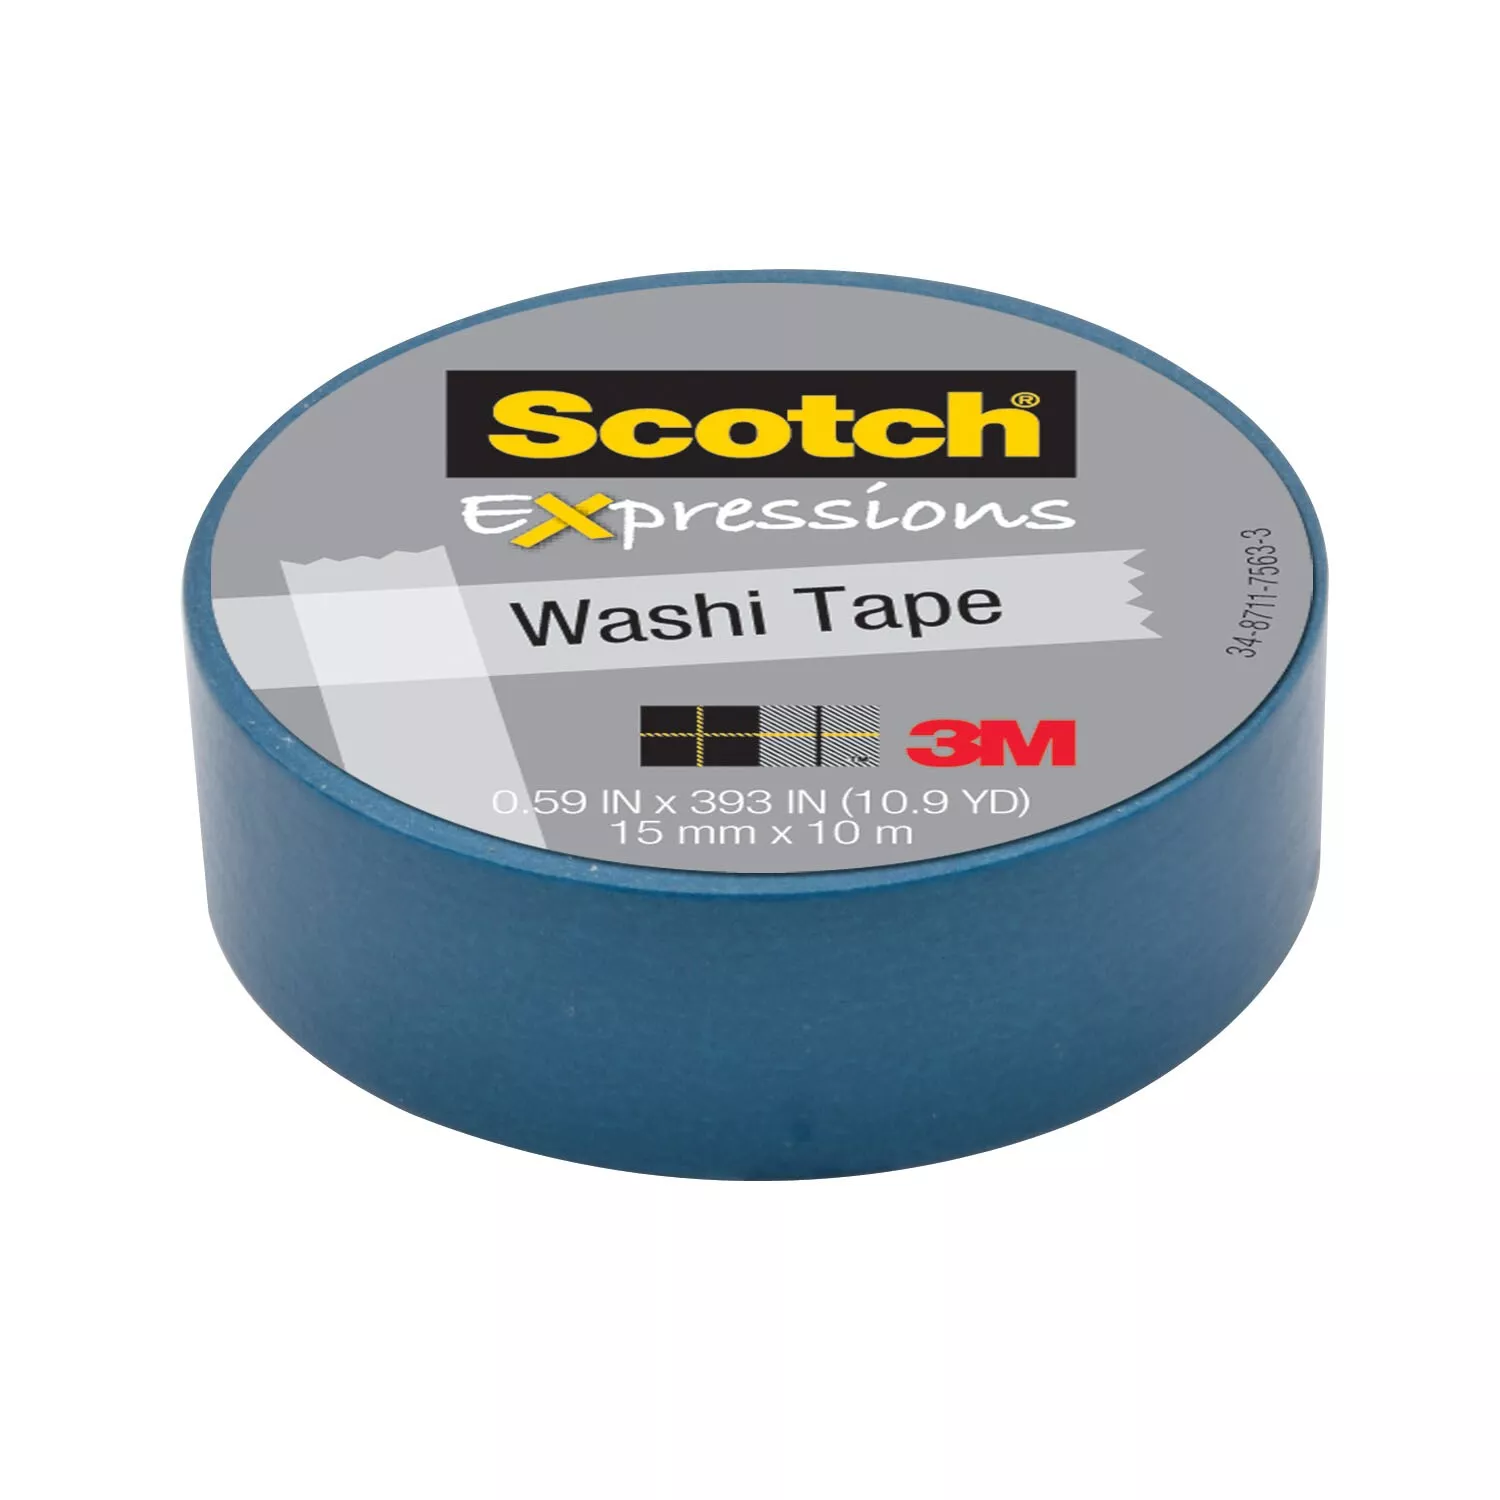 Scotch® Expressions Washi Tape C314-BLU, .59 in x 393 in (15 mm x 10 m)
Blue